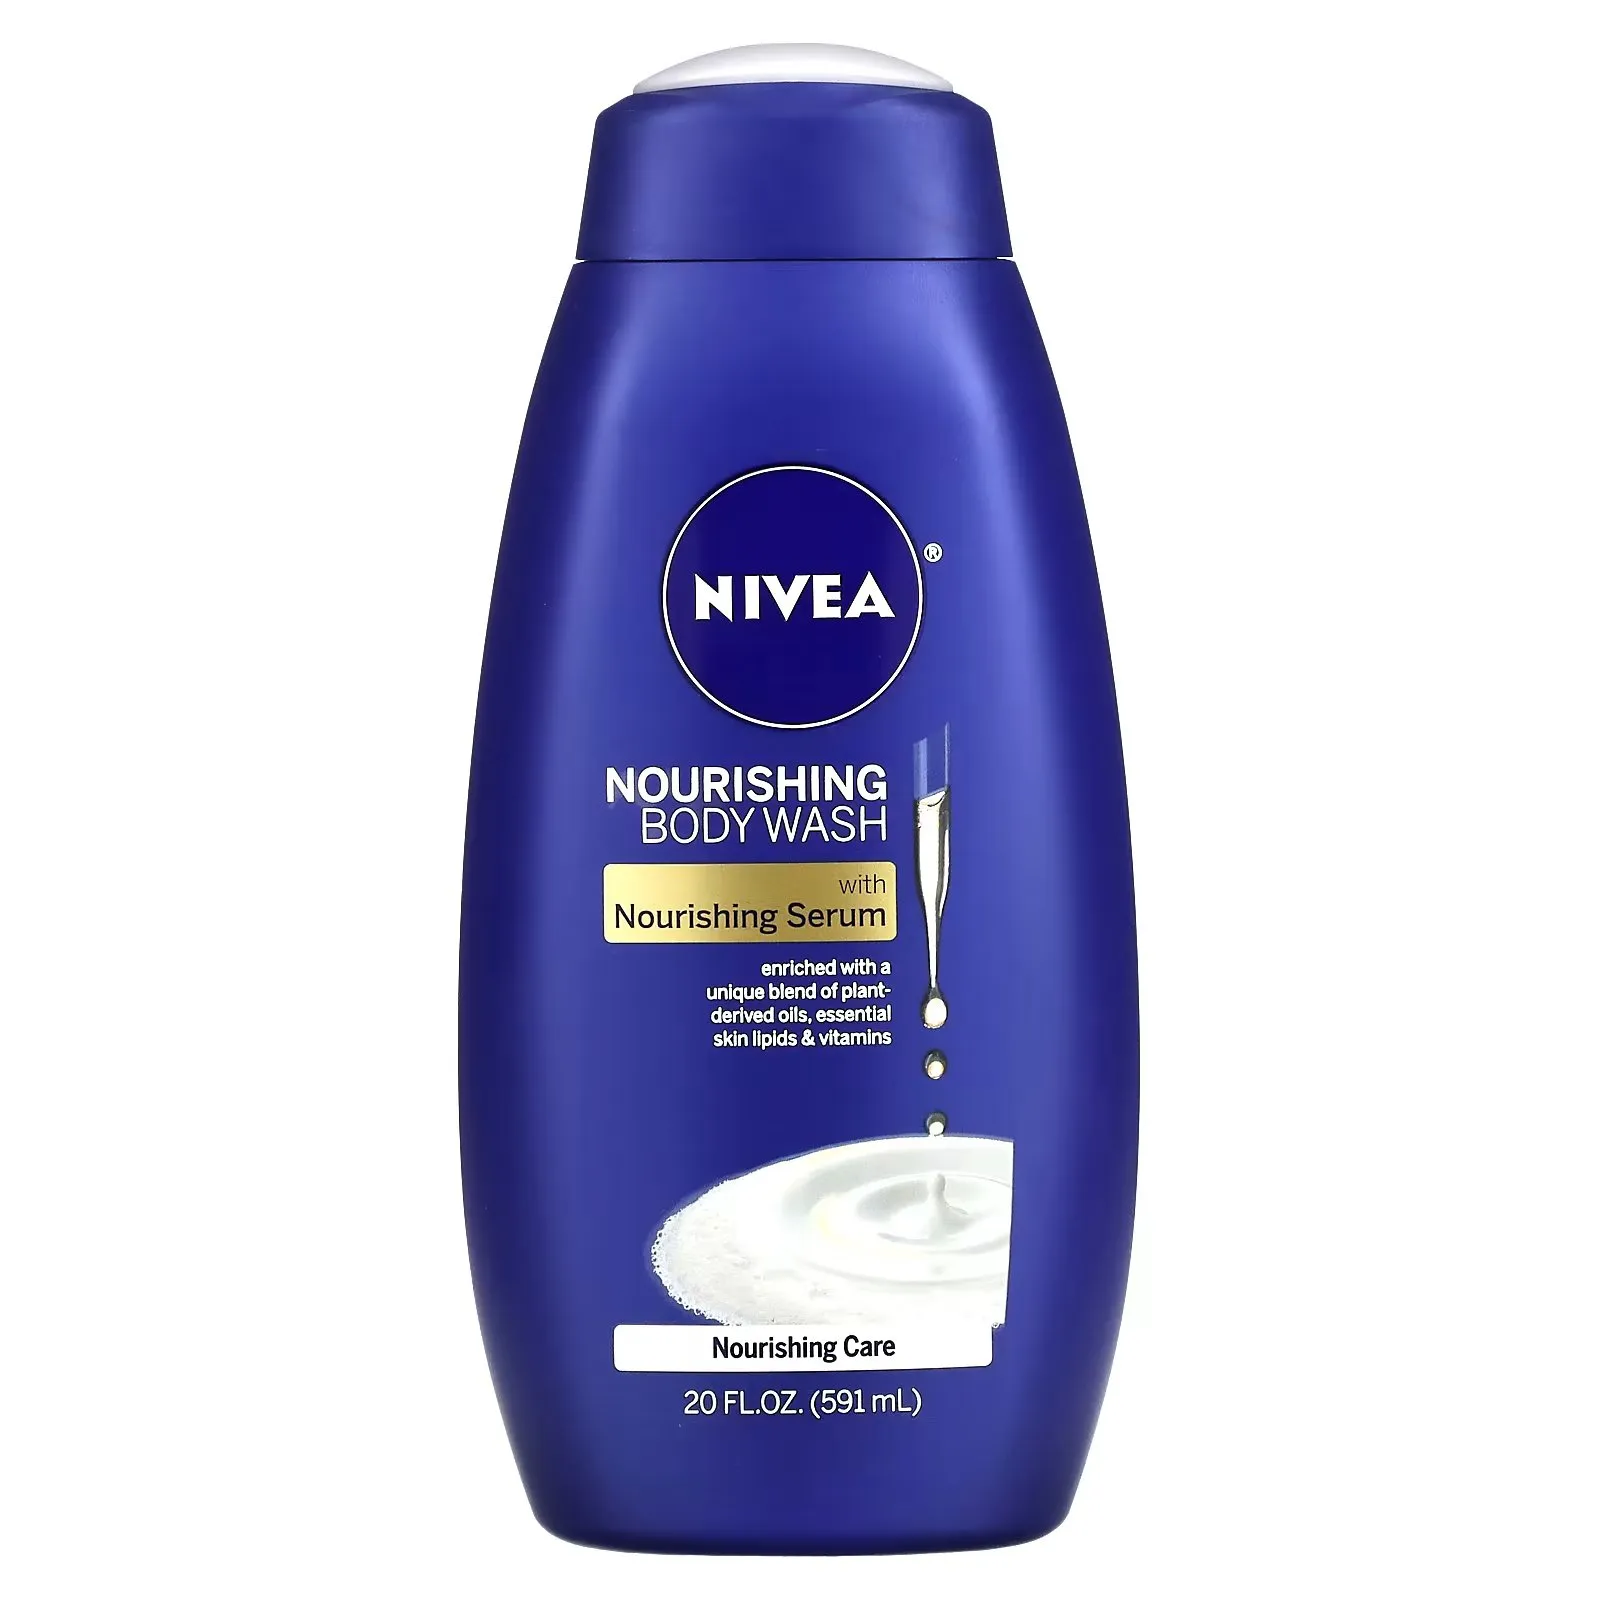 FEMMENORDIC's choice in the Dove vs Nivea comparison, the Nivea Nourishing Body Wash